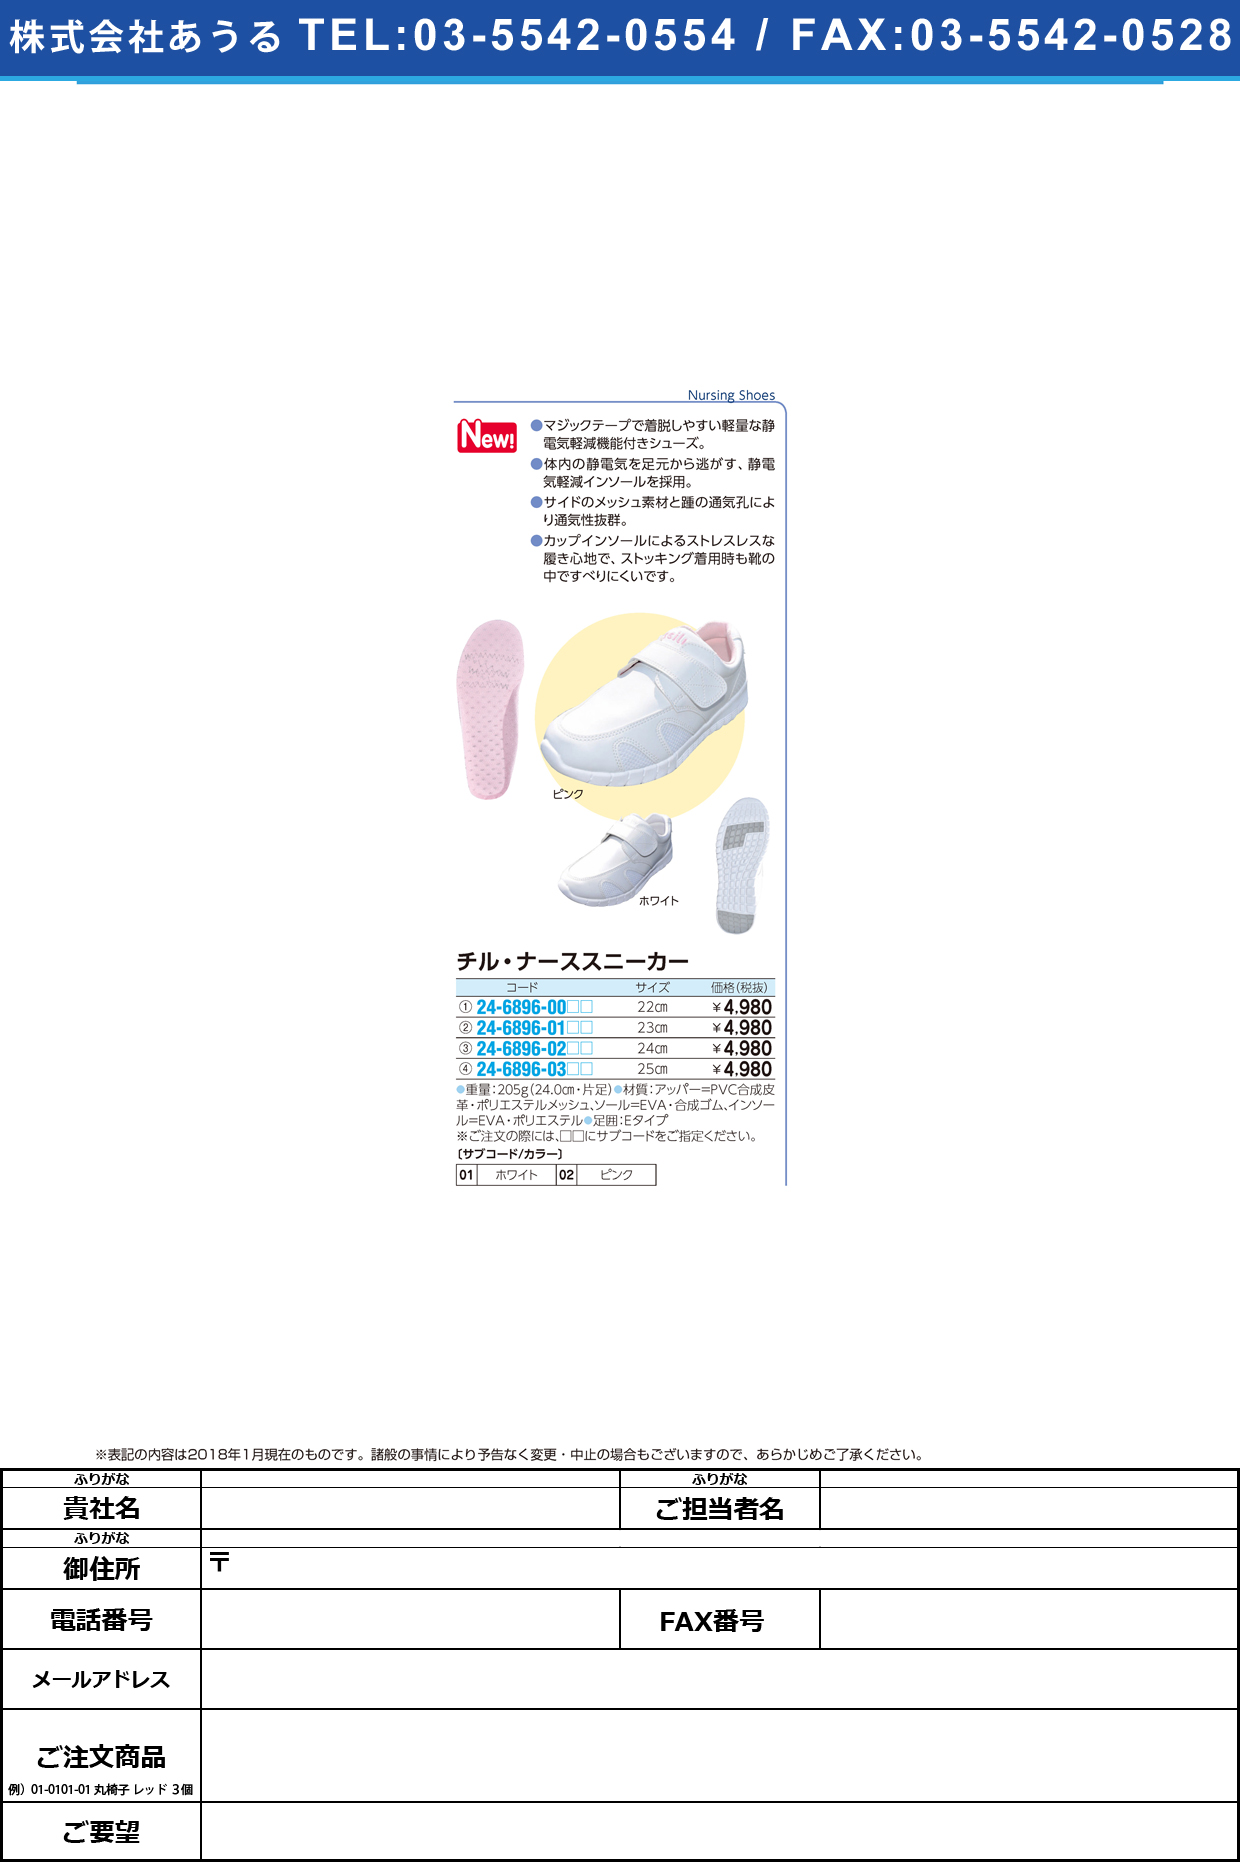 (24-6896-03)チル・ナーススニーカー 25.0CM ﾁﾙﾅｰｽｽﾆｰｶｰ ホワイト【1足単位】【2018年カタログ商品】